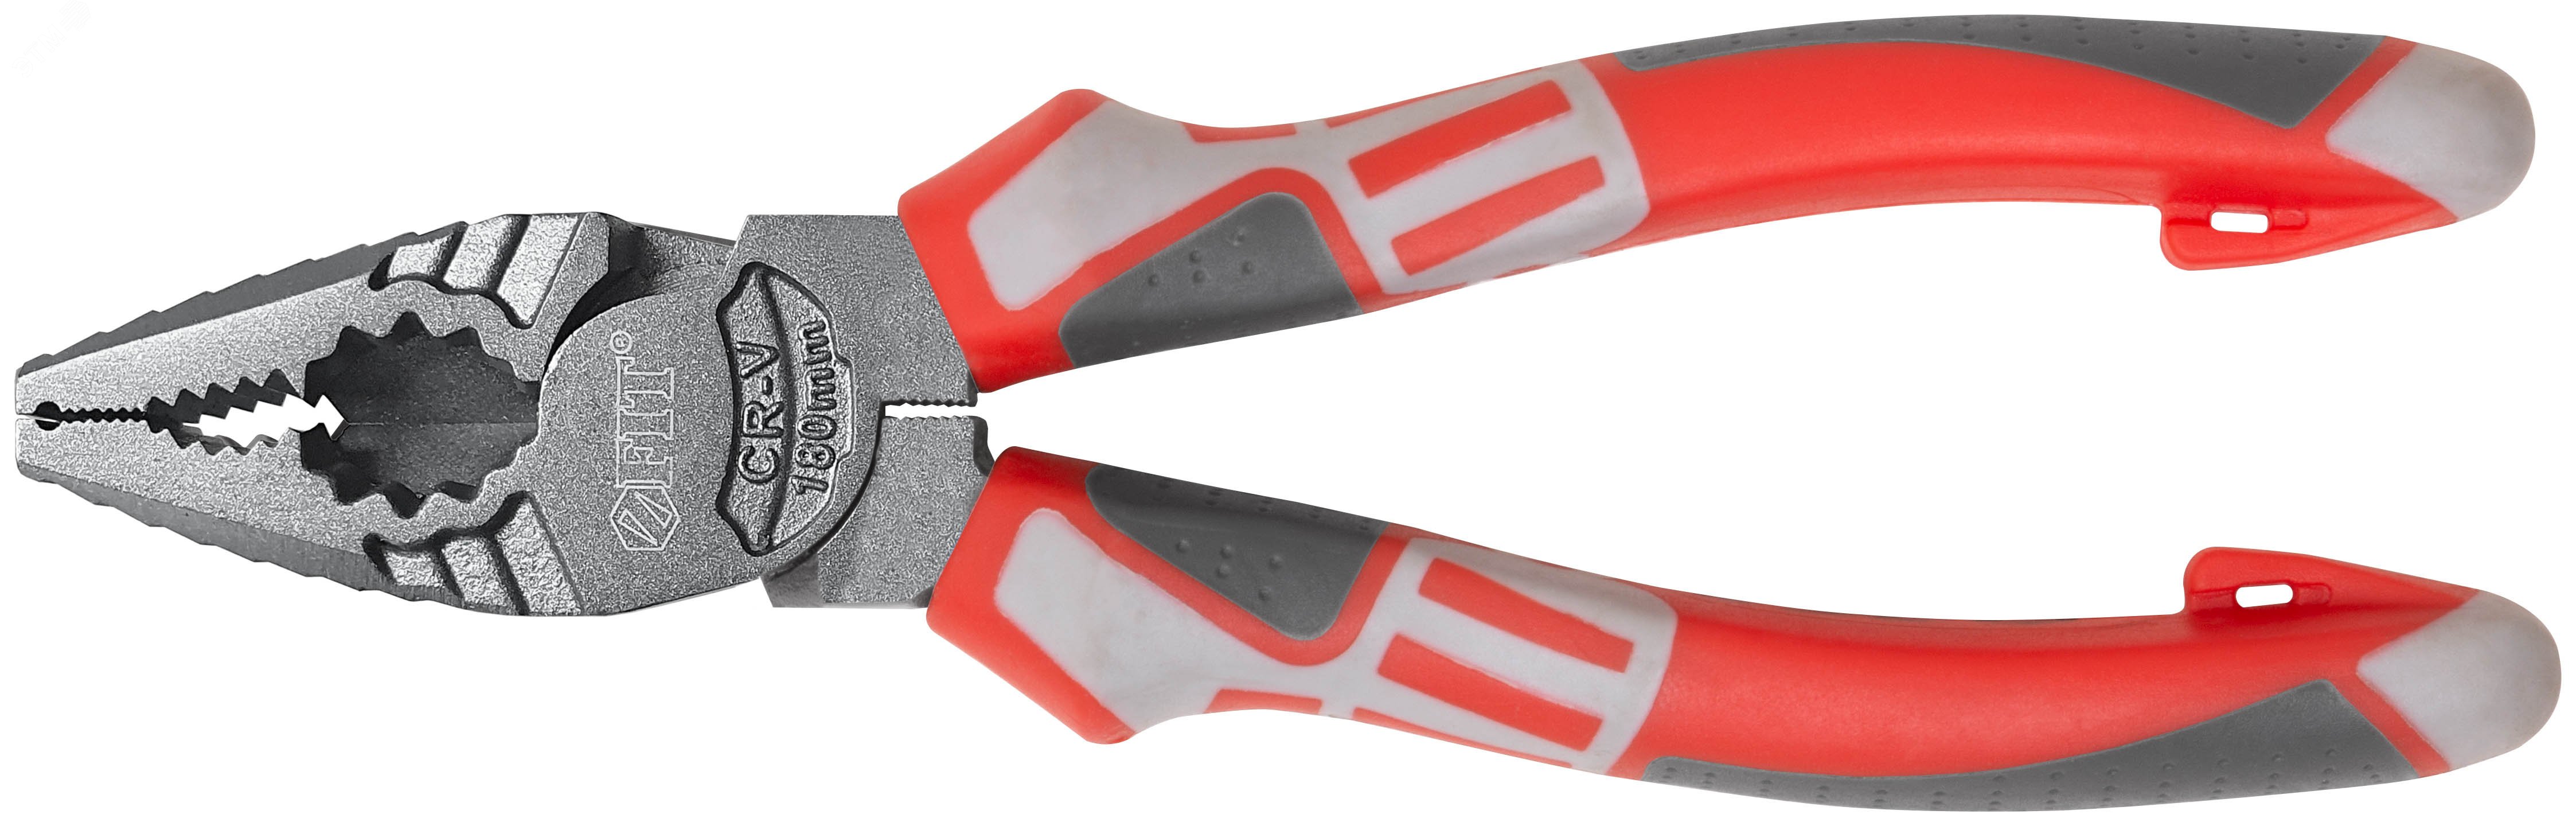 Плоскогубцы комбинированные ''Эталон'', CrV сталь, ребра жесткости на губках, тефлоновое покрытие, 3К прорезиненные ручки 180 мм 50694 FIT